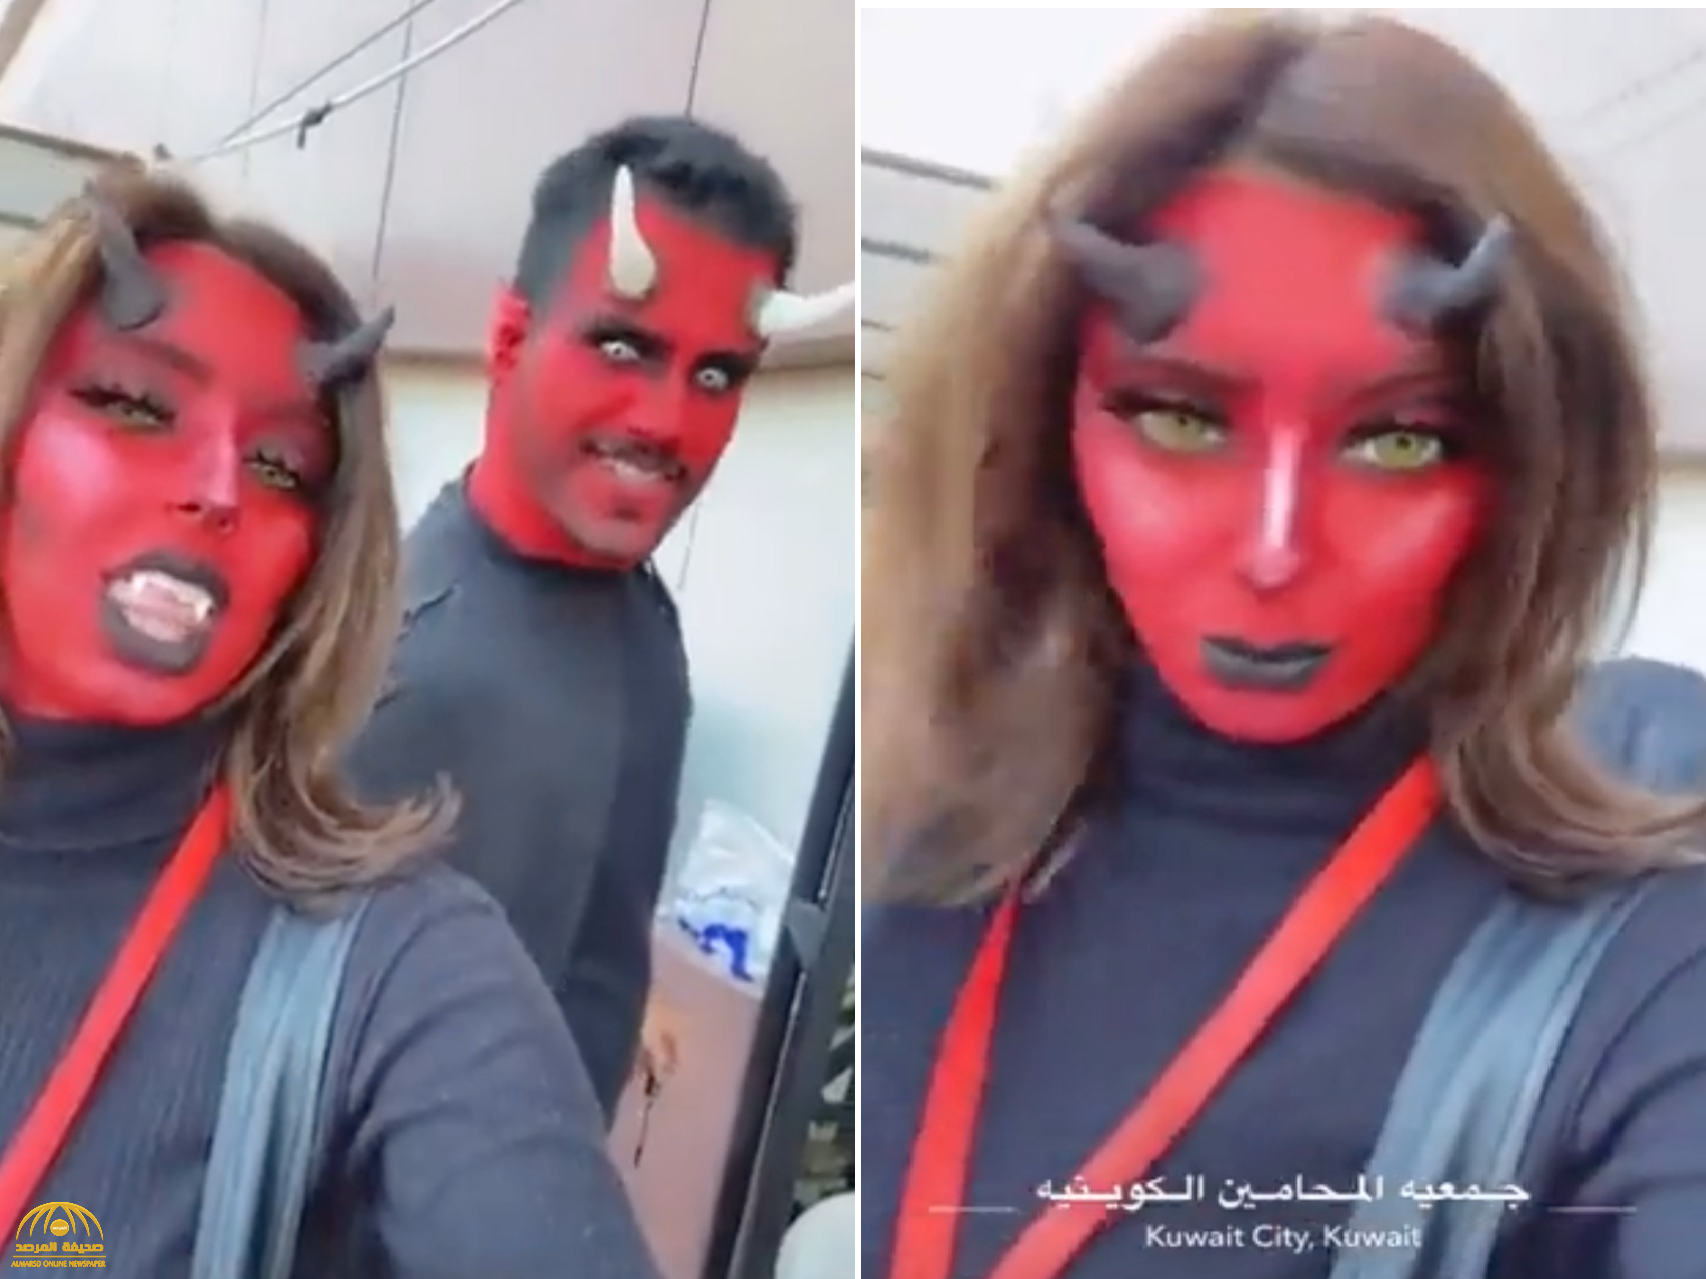 شاهد.. فيديو لأشخاص متنكرين على هيئة "شياطين" في الكويت يثير الجدل